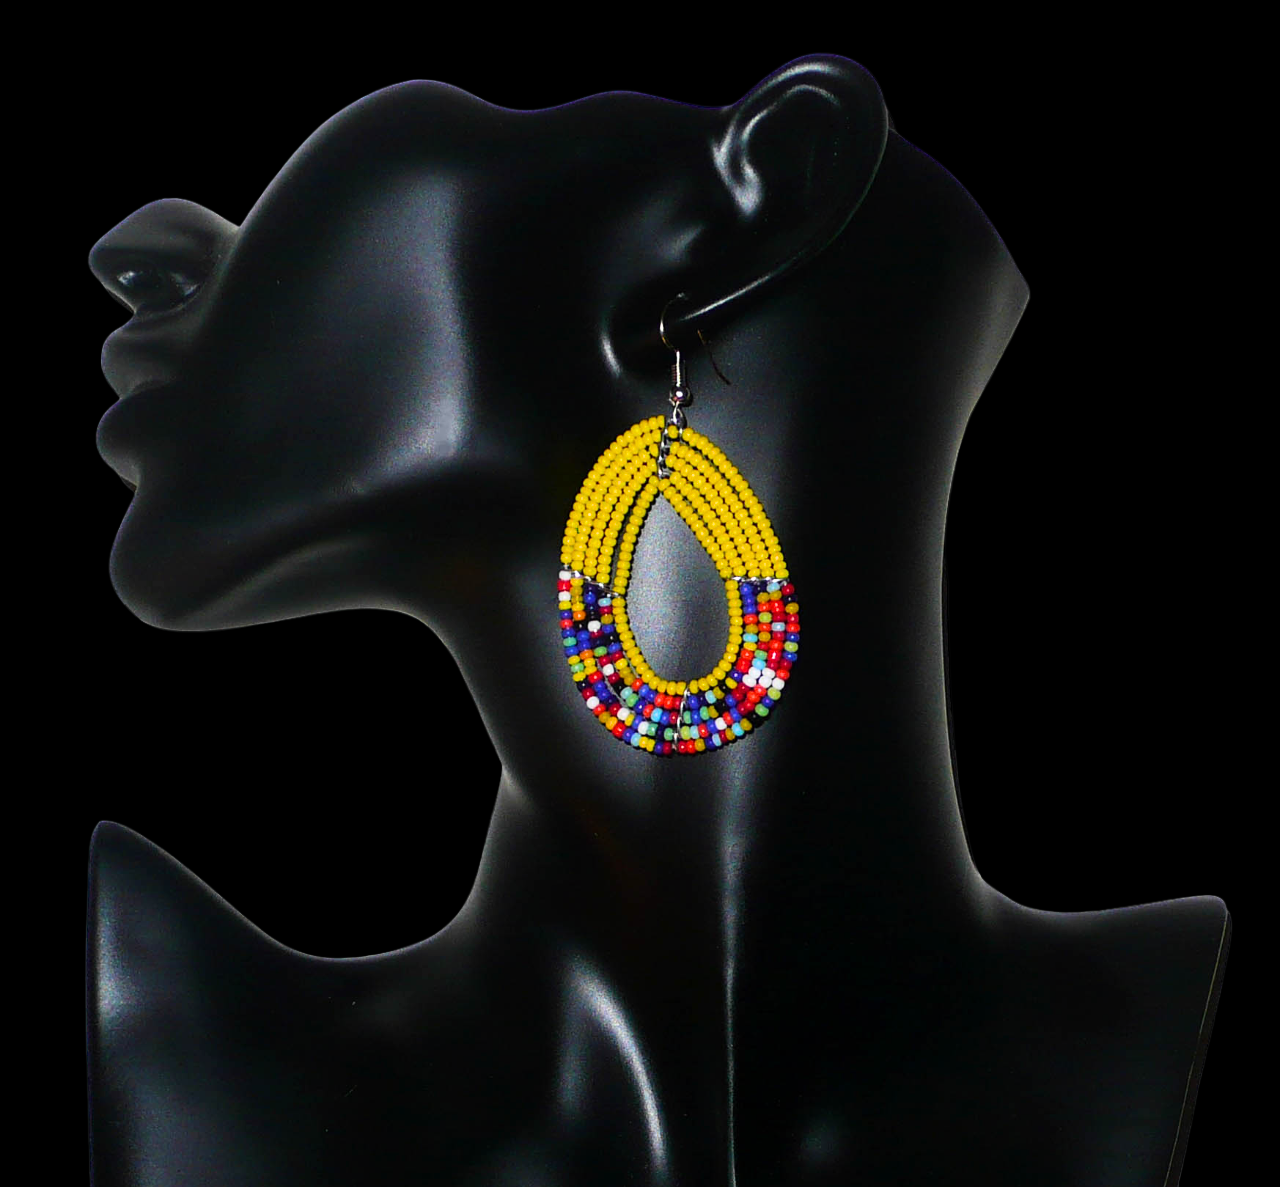 Boucles d'oreilles hippie chic en perles de rocaille jaunes et multicolores enfilées sur cinq rangées de fils de fer montés en forme d'ovales. Elles mesurent 7 cm de long et 3,5 cm de large et se portent sur des oreilles percées.